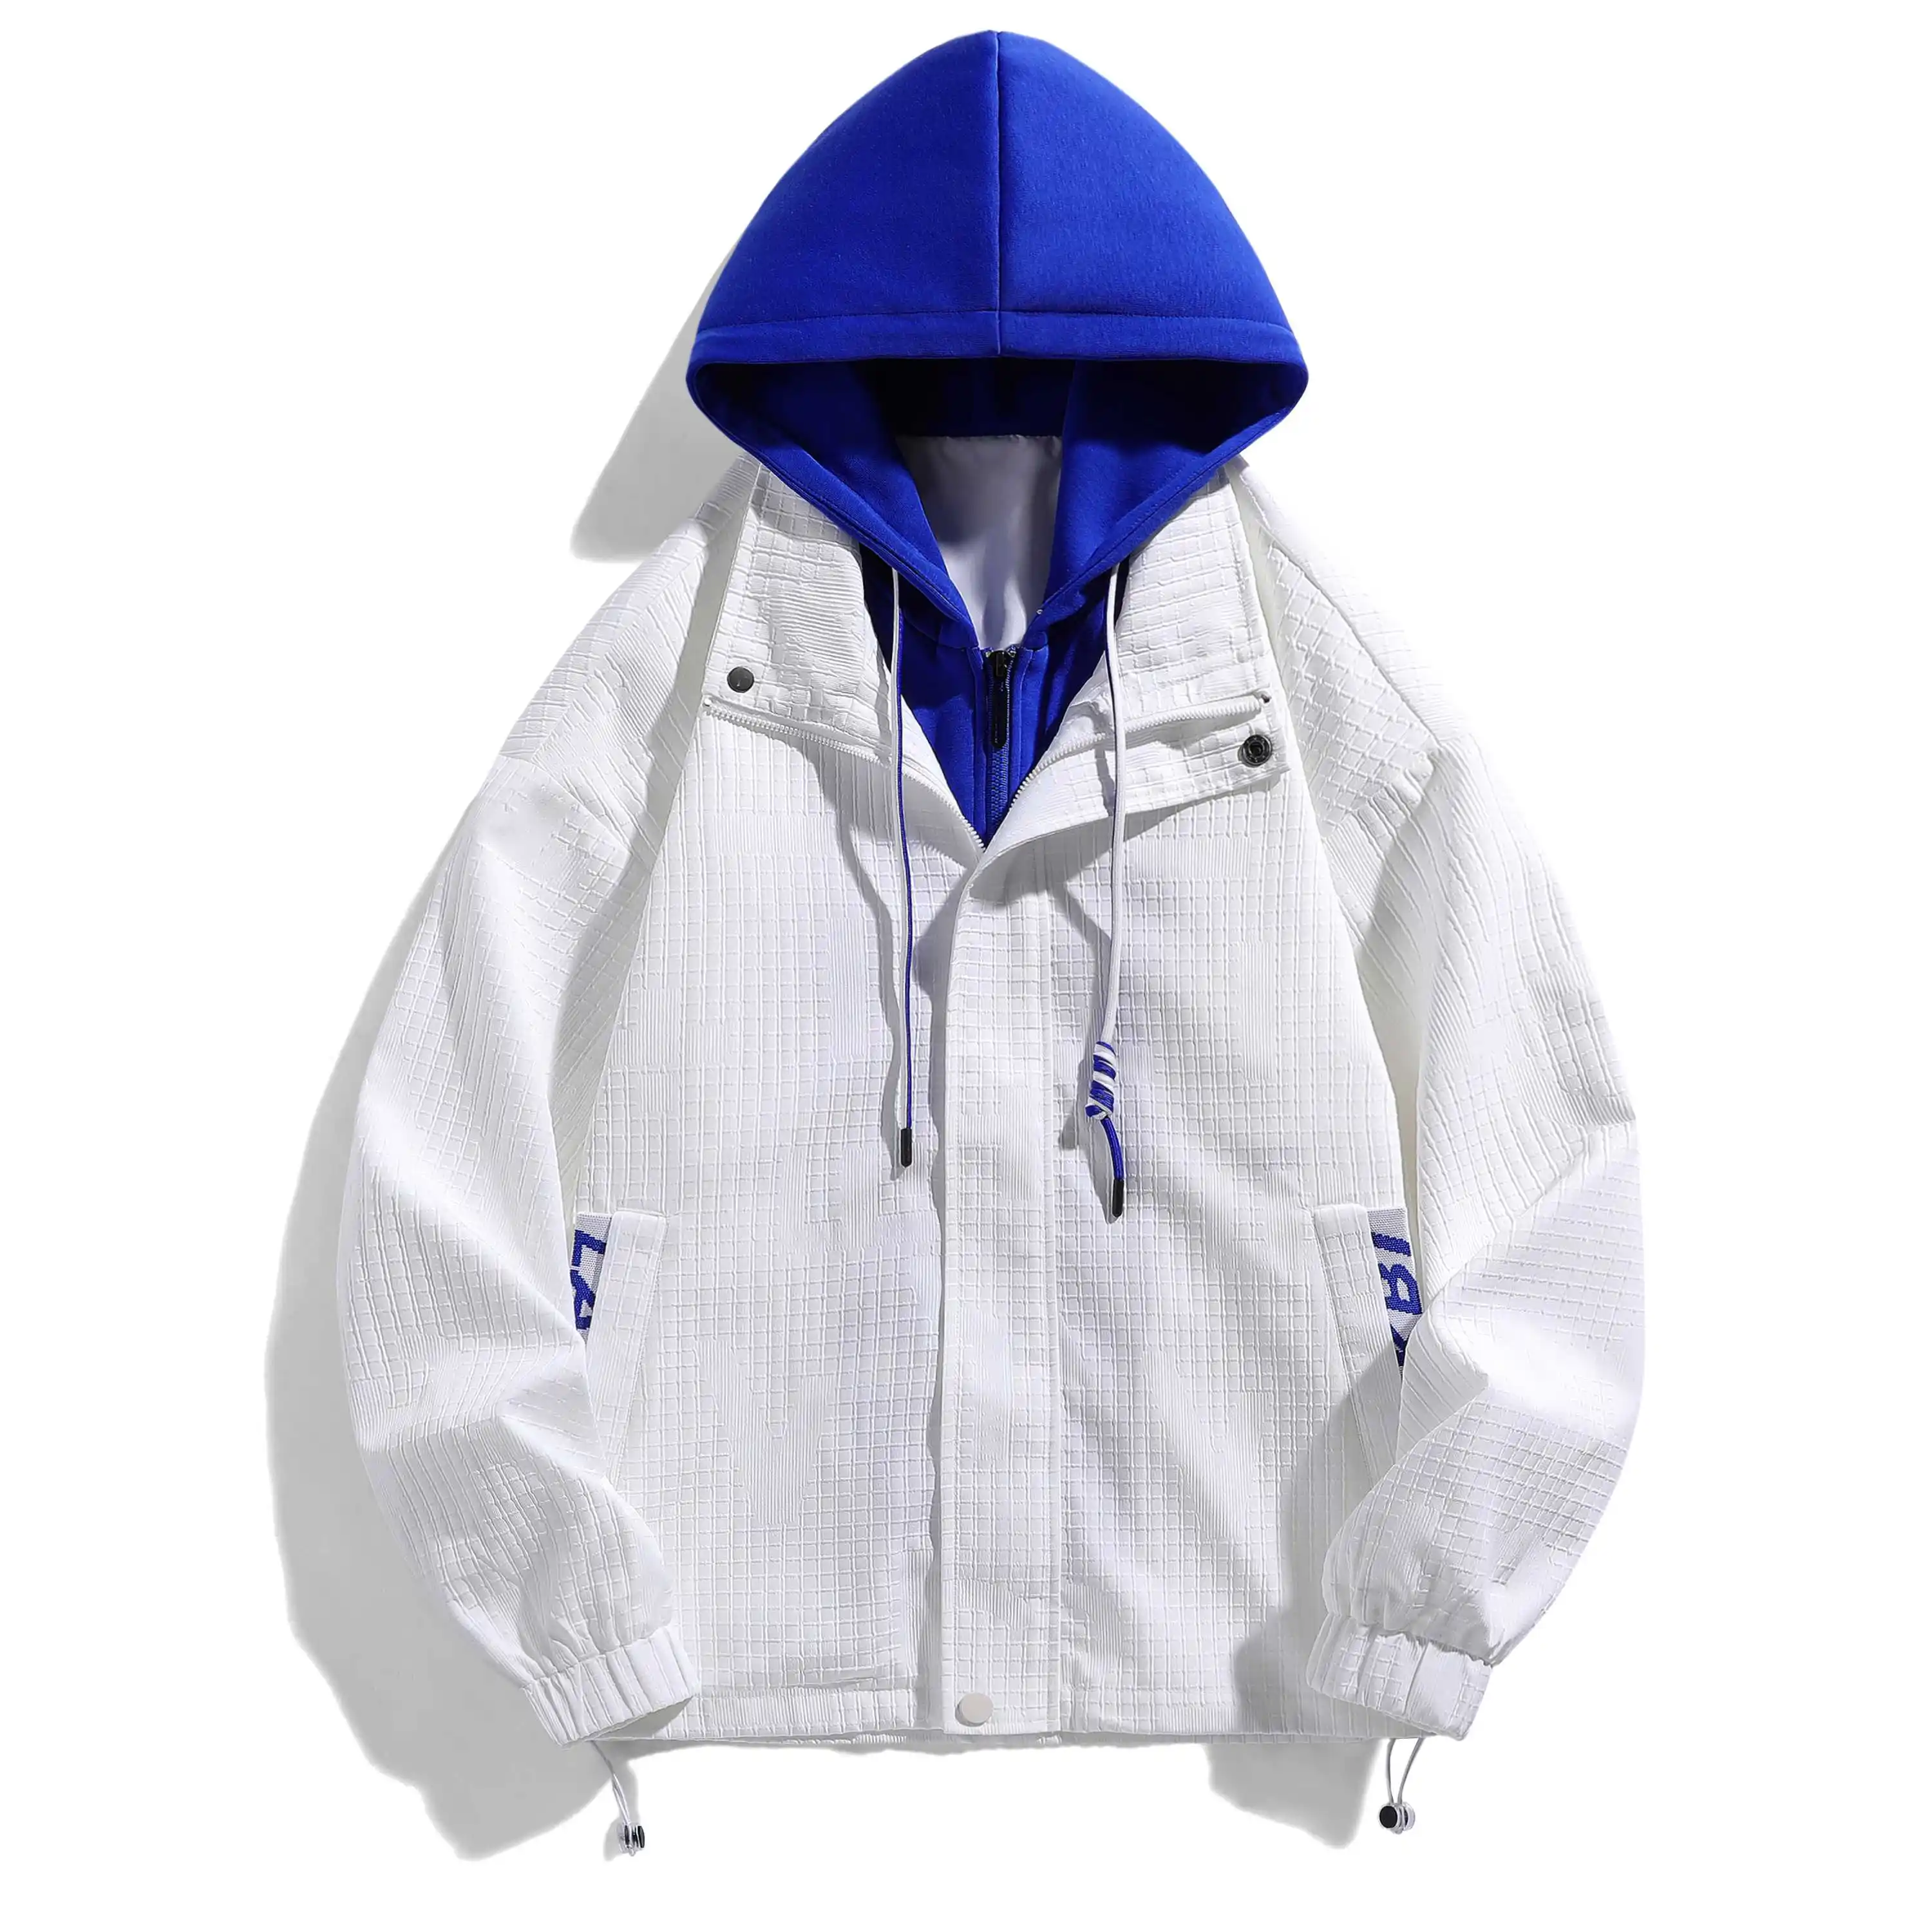 LAYENNE 유행 방수 주문 라벨 집업 재킷 3d 퍼프 프린트 남성 스포츠 재킷 방수 재킷 남여 공용